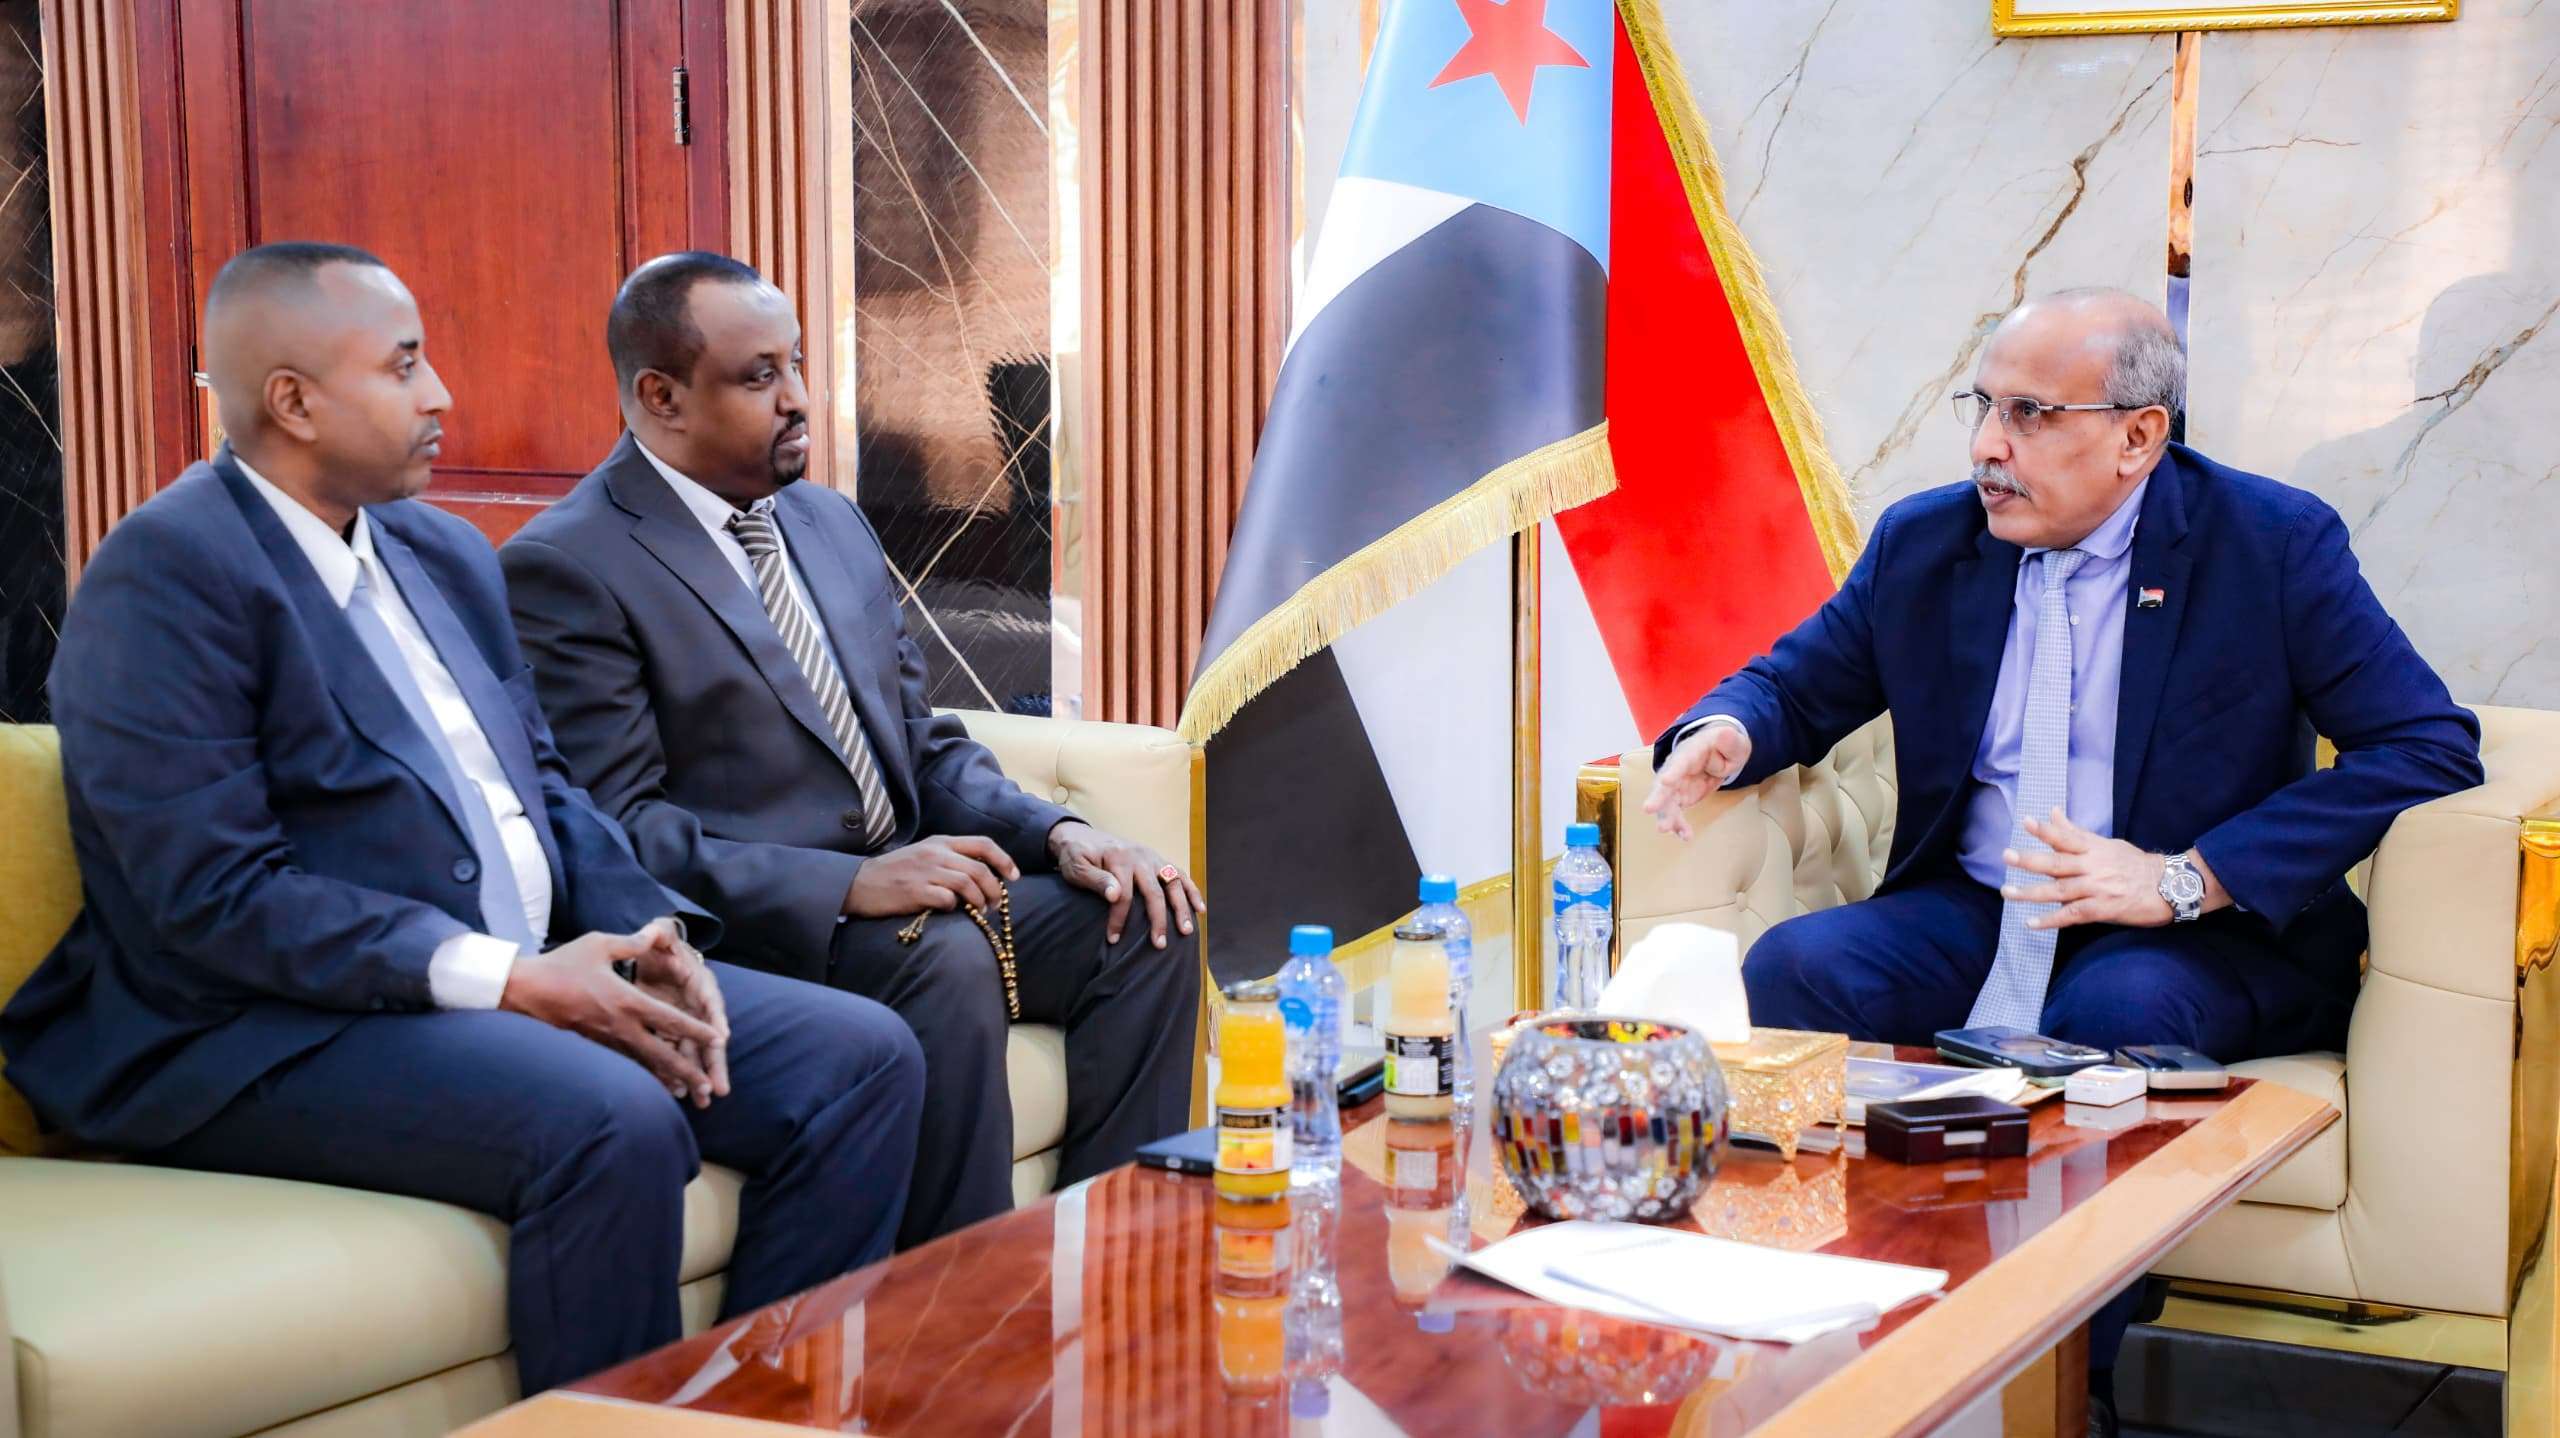 سفير الصومال لدى اليمن يناقش مع “الانتقالي الجنوبي” عمليات القرصنة في البحر العربي